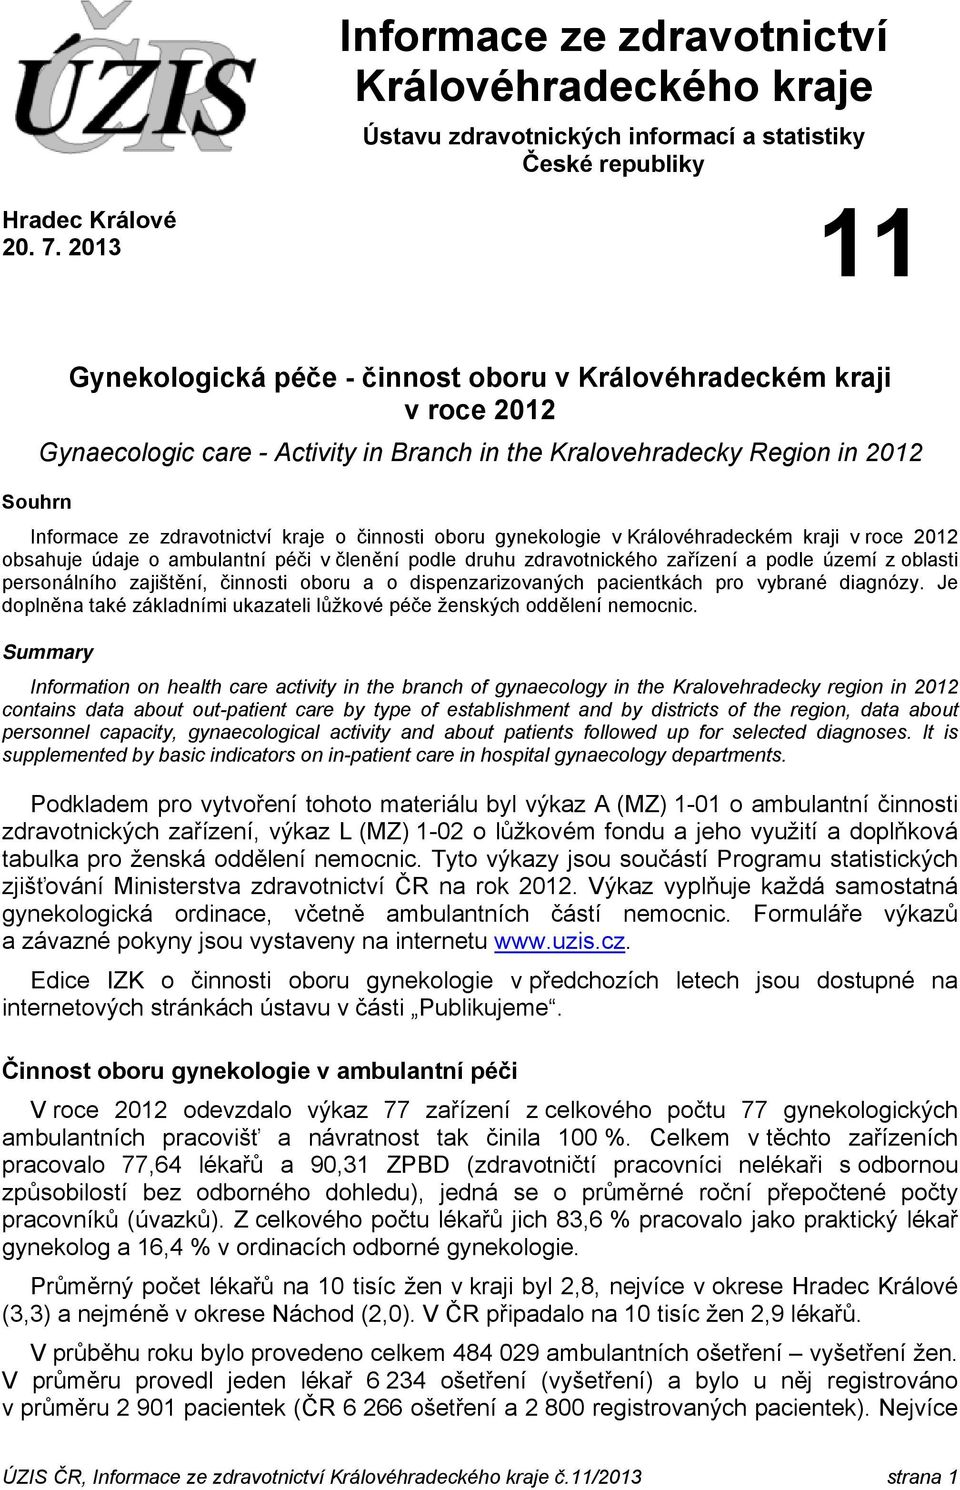 činnosti oboru gynekologie v Královéhradeckém kraji v roce 2012 obsahuje údaje o ambulantní péči v členění podle druhu zdravotnického zařízení a podle území z oblasti personálního zajištění, činnosti